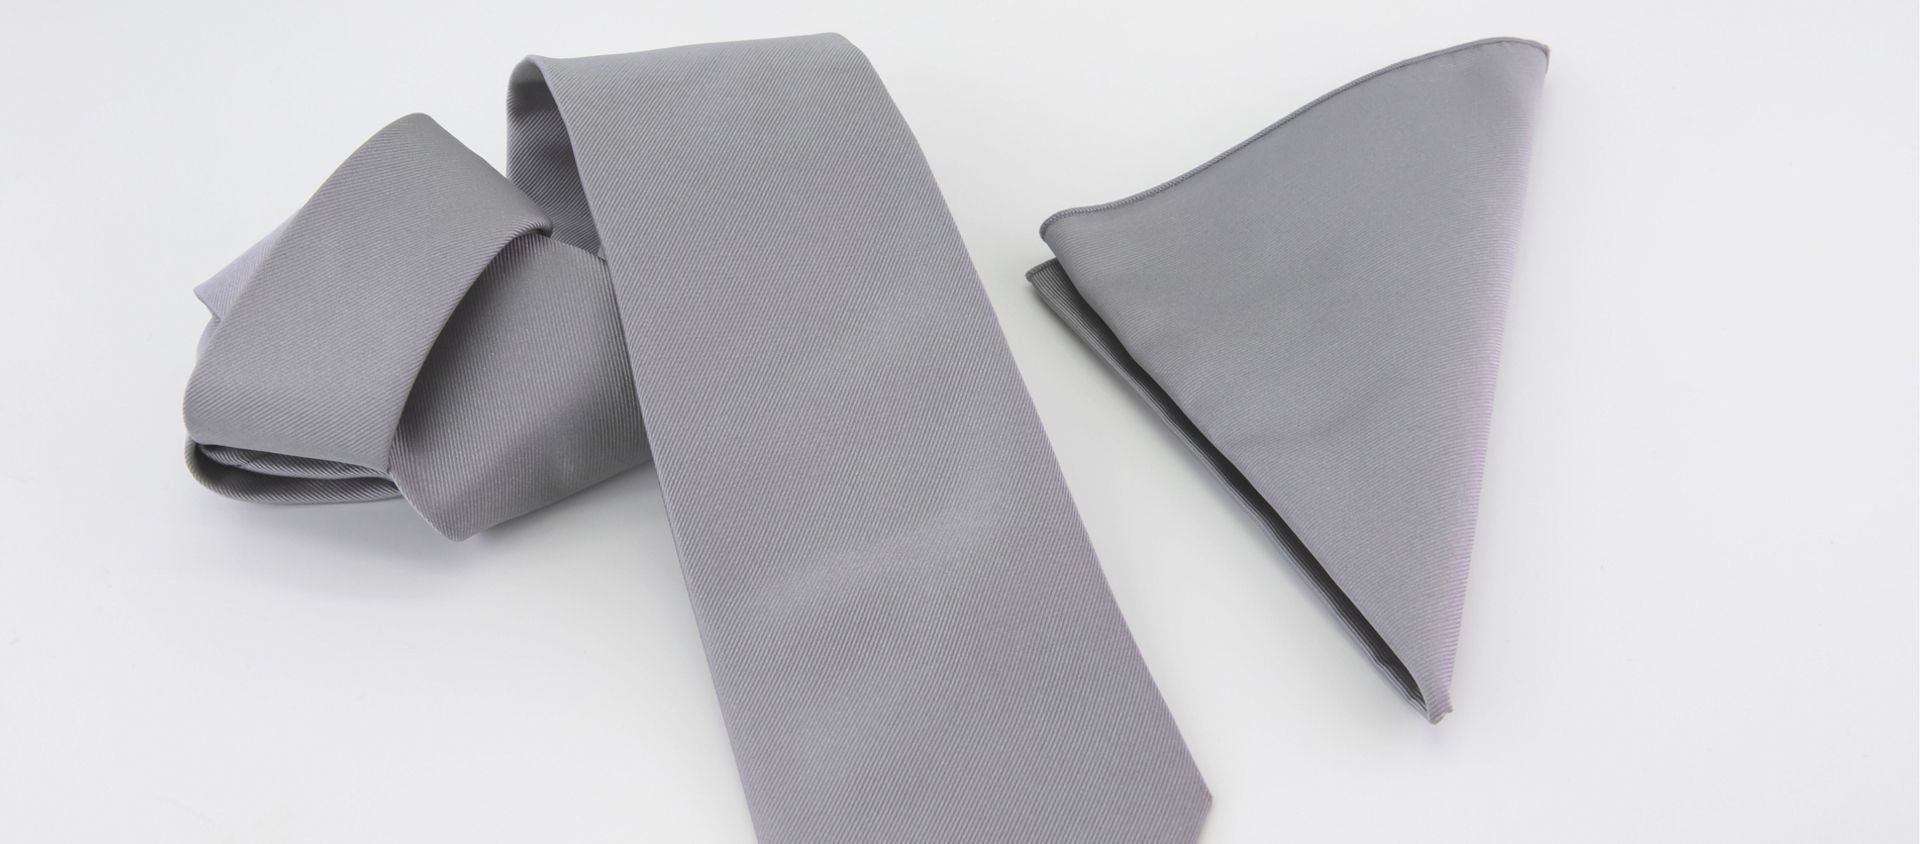 Cravatta grigia con fazzoletto da taschino